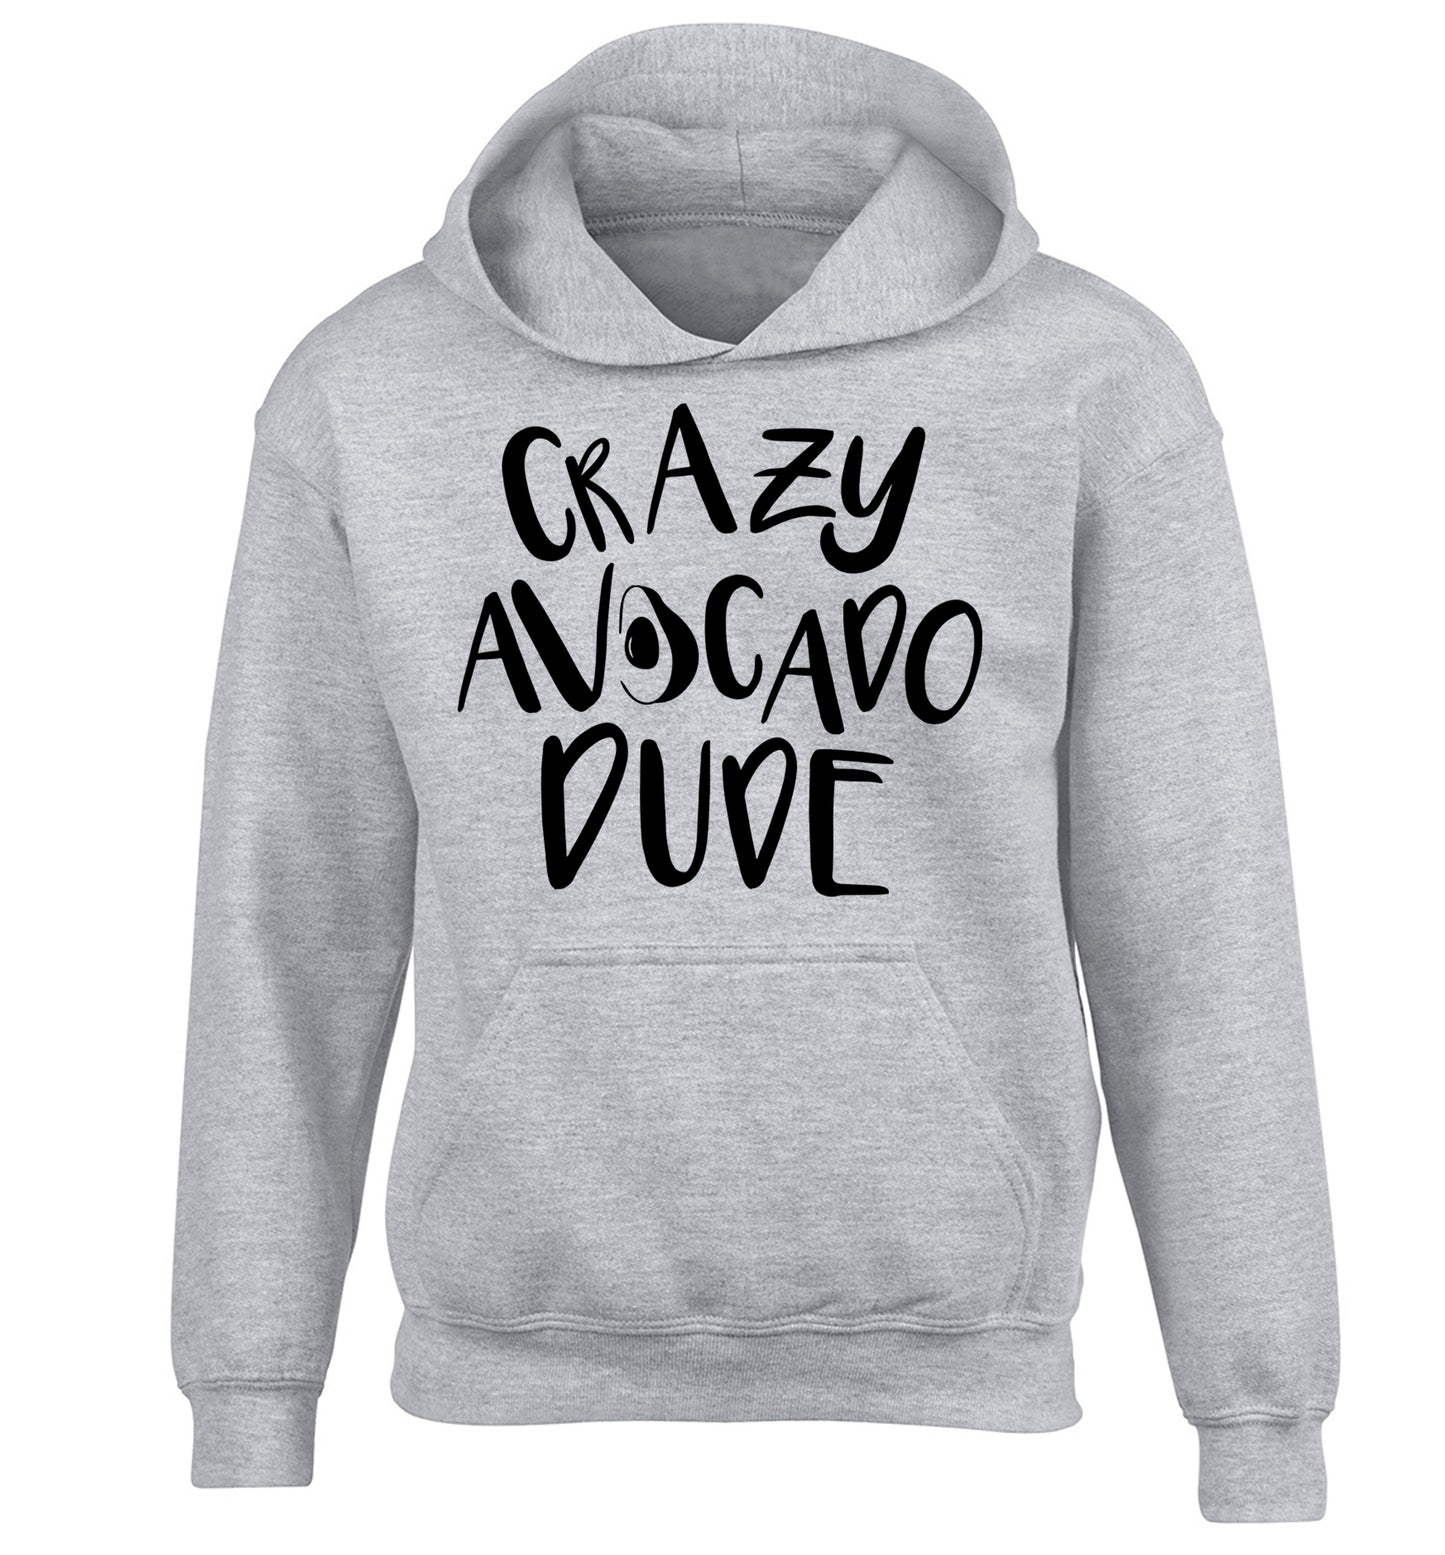 Crazy avocado dude children's grey hoodie 12-14 Years